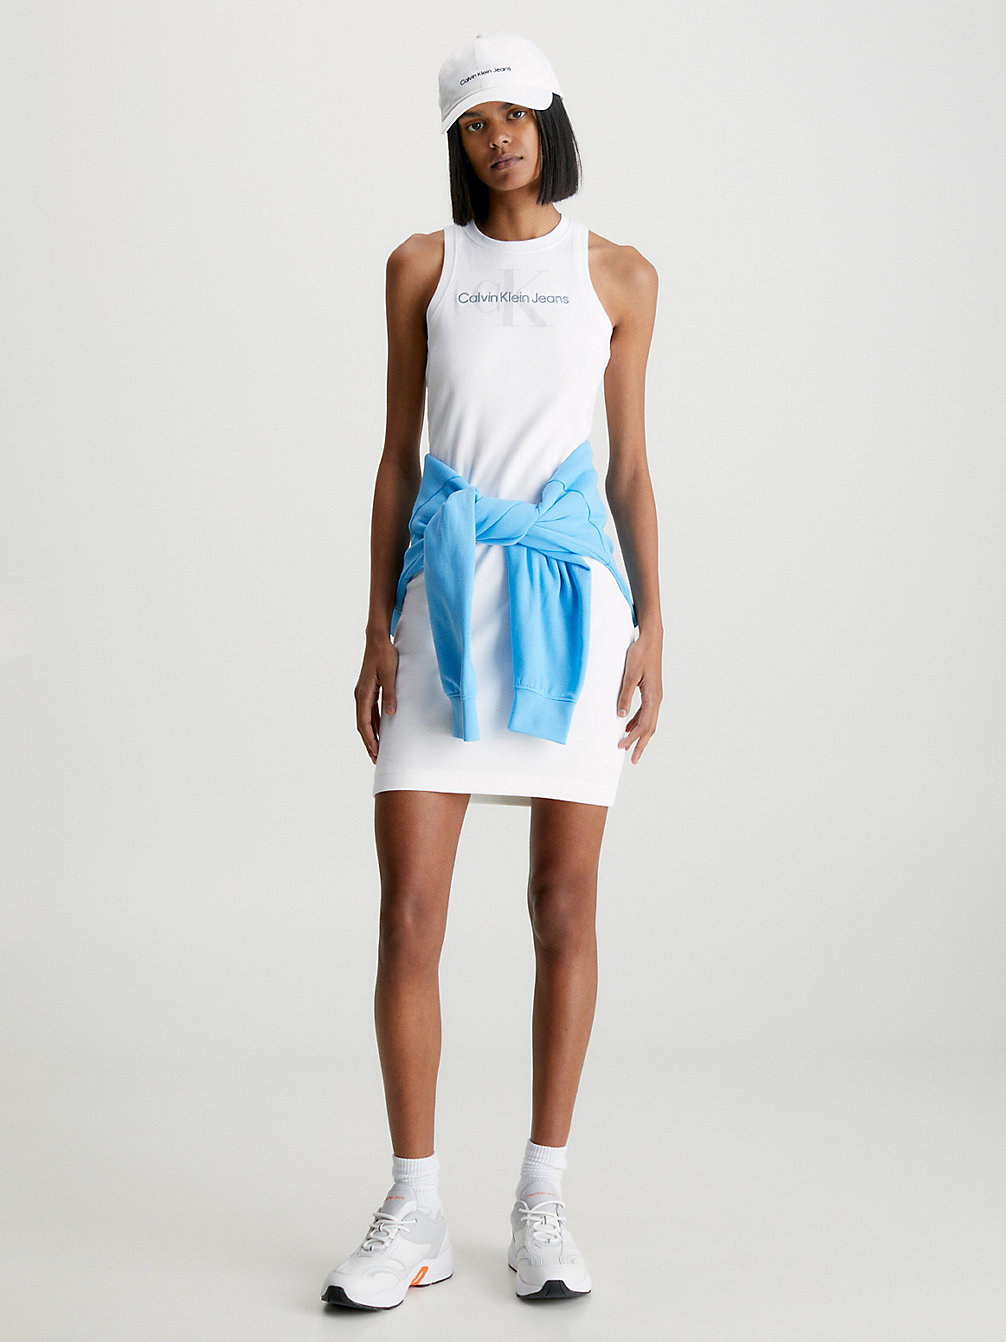 BRIGHT WHITE > Wąska Ściągaczowa Sukienka Bez Rękawów Z Monogramem > undefined Kobiety - Calvin Klein